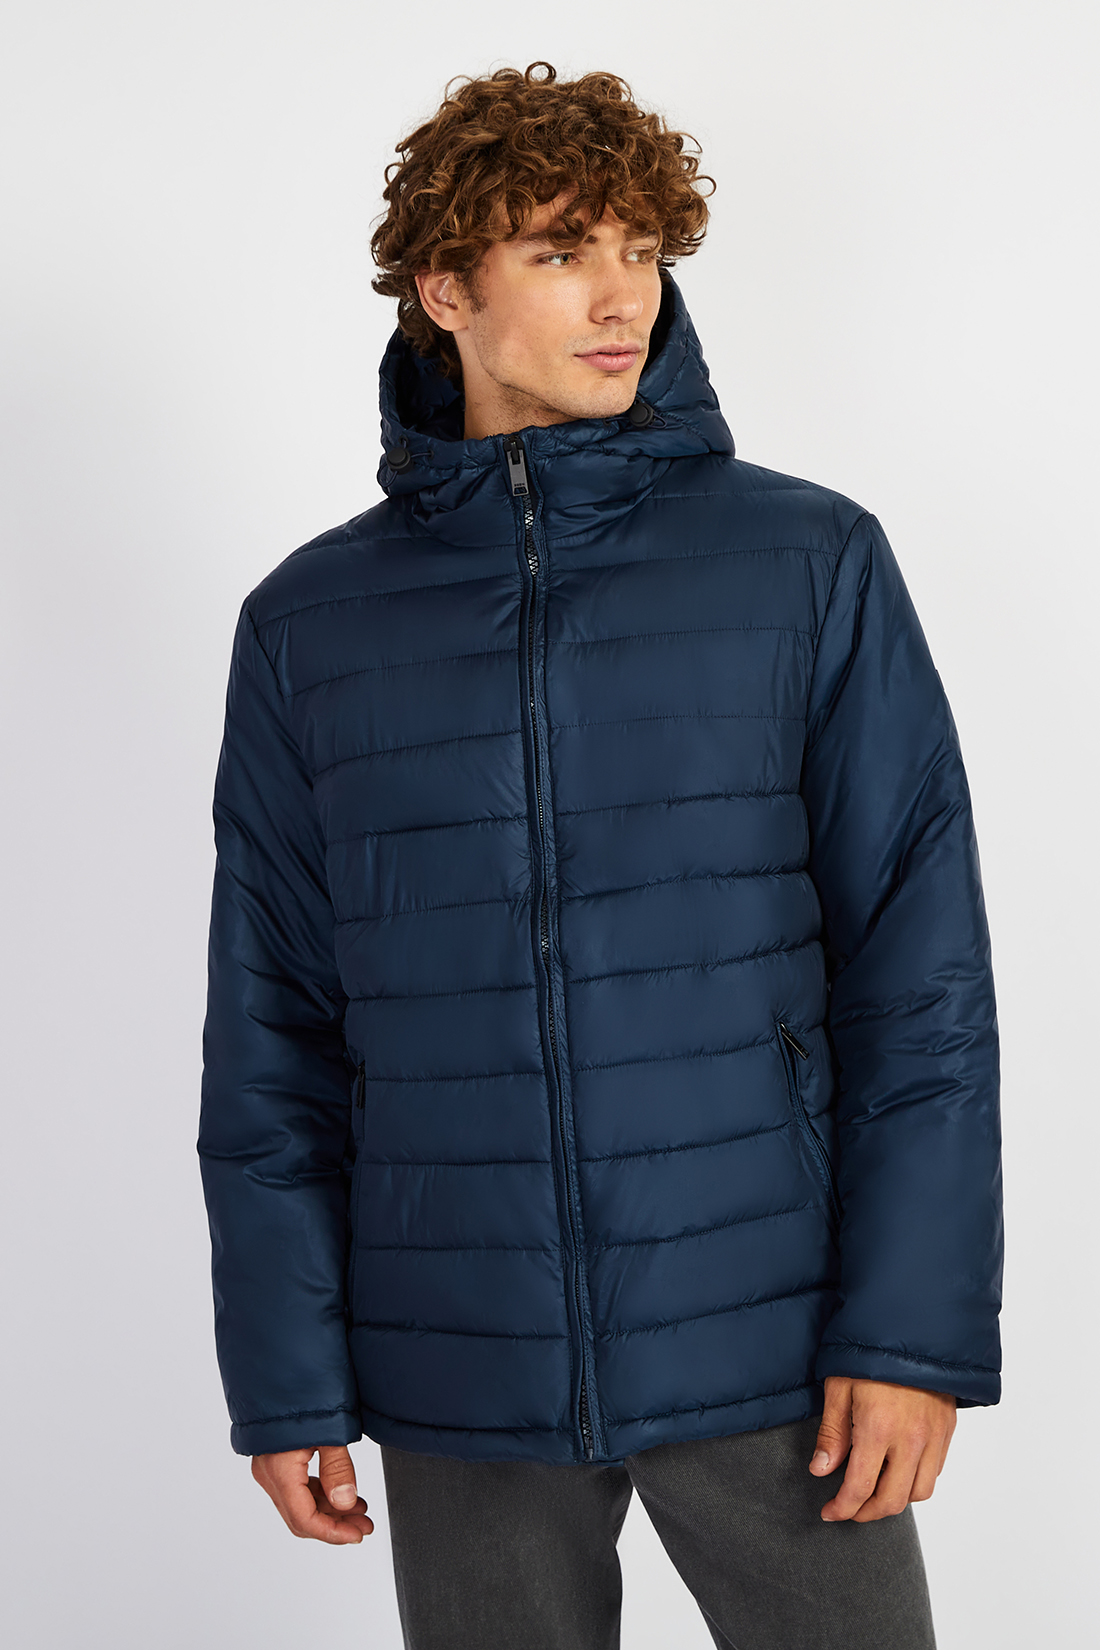 Куртка (арт. baon B5322504), размер L, цвет синий